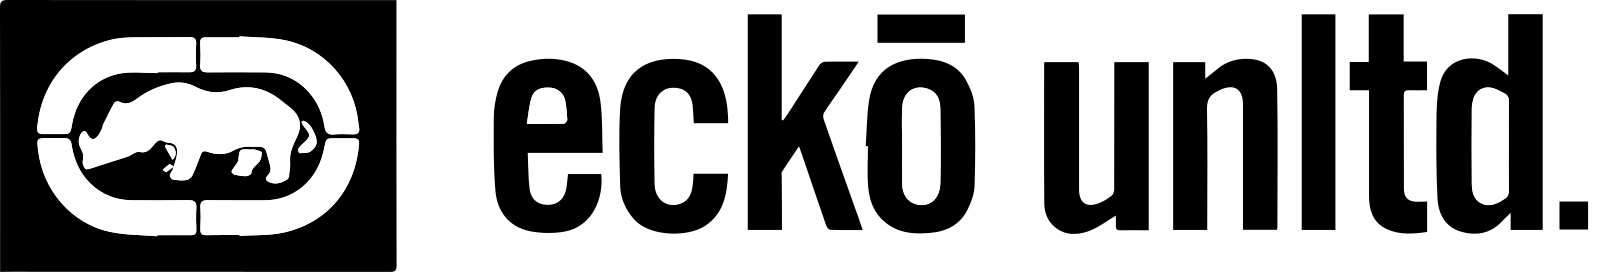 ecko unltd logo 20 - ecko Logo - ecko unltd Logo